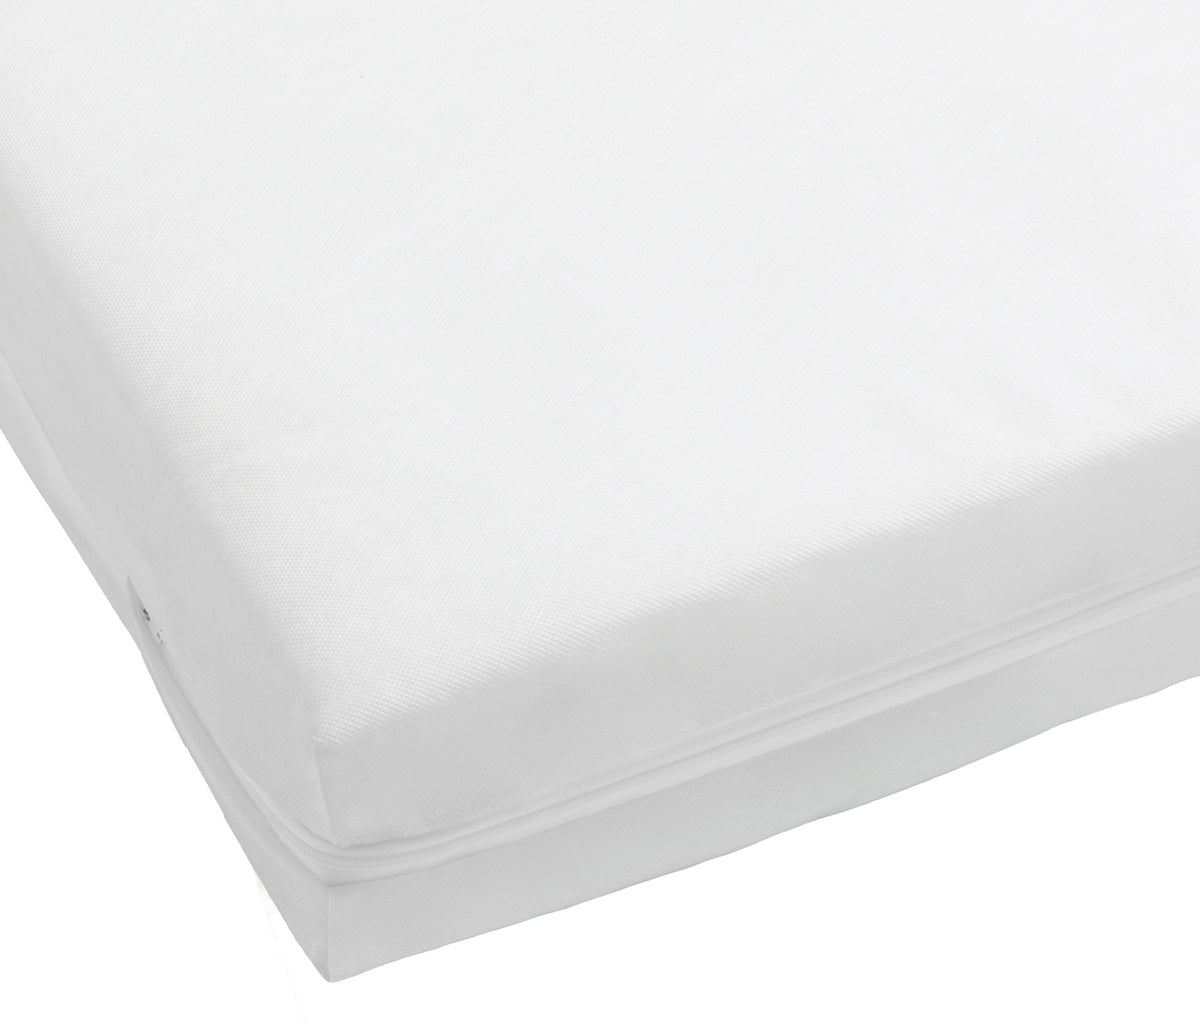 Eco Fibre Cot Bed Mattress 140 x 70 cm